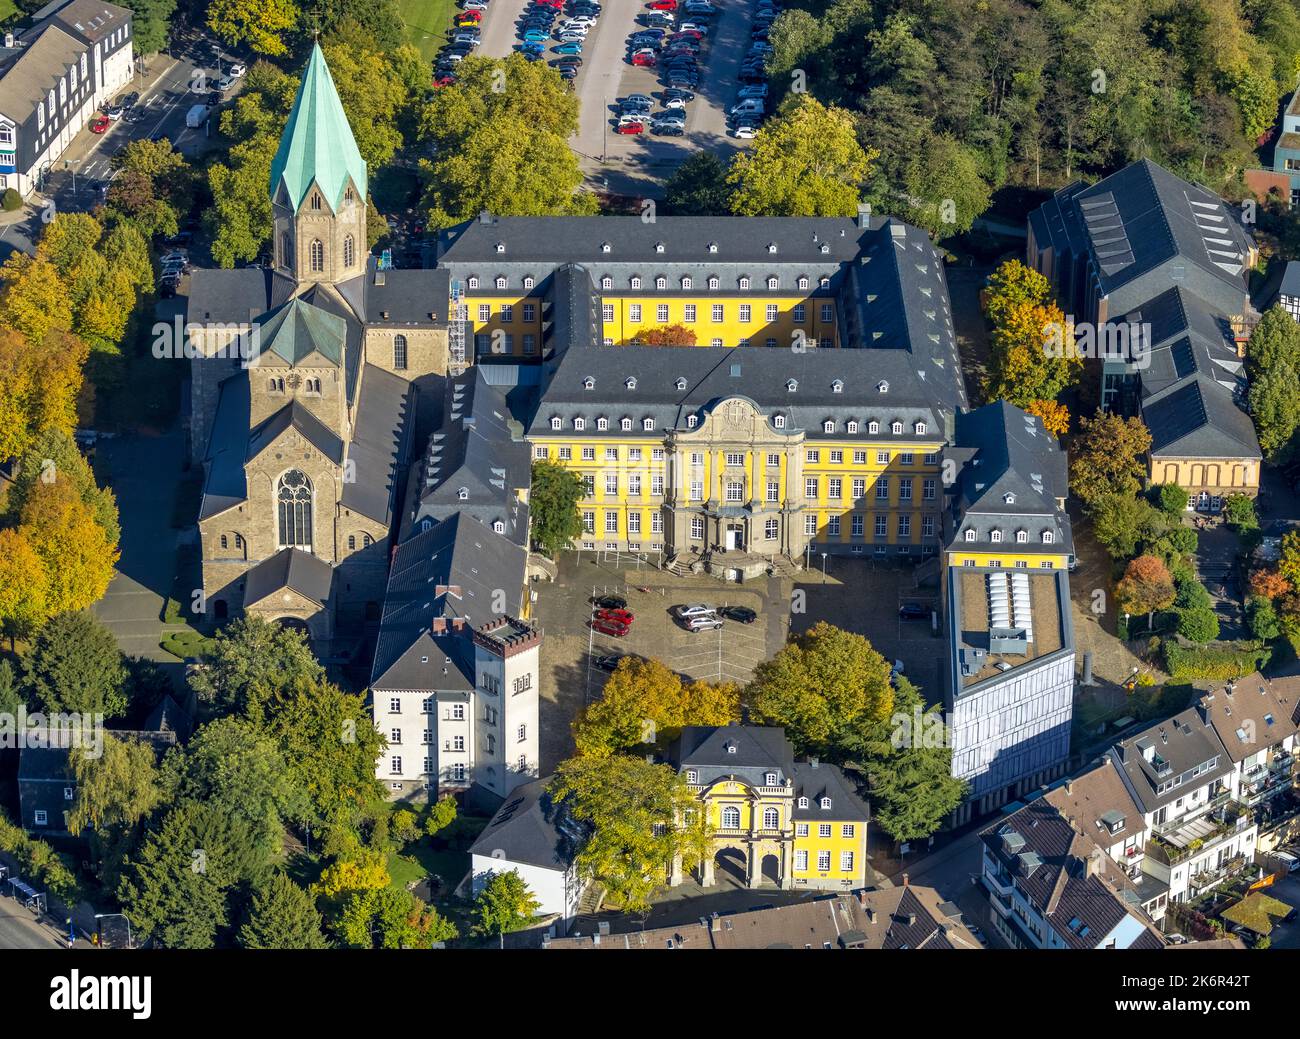 Vue aérienne, Université des arts de Folkwang, église catholique basilique St. Ludgerus, werden, Essen, région de la Ruhr, Rhénanie-du-Nord-Westphalie, Allemagne, Worshi Banque D'Images